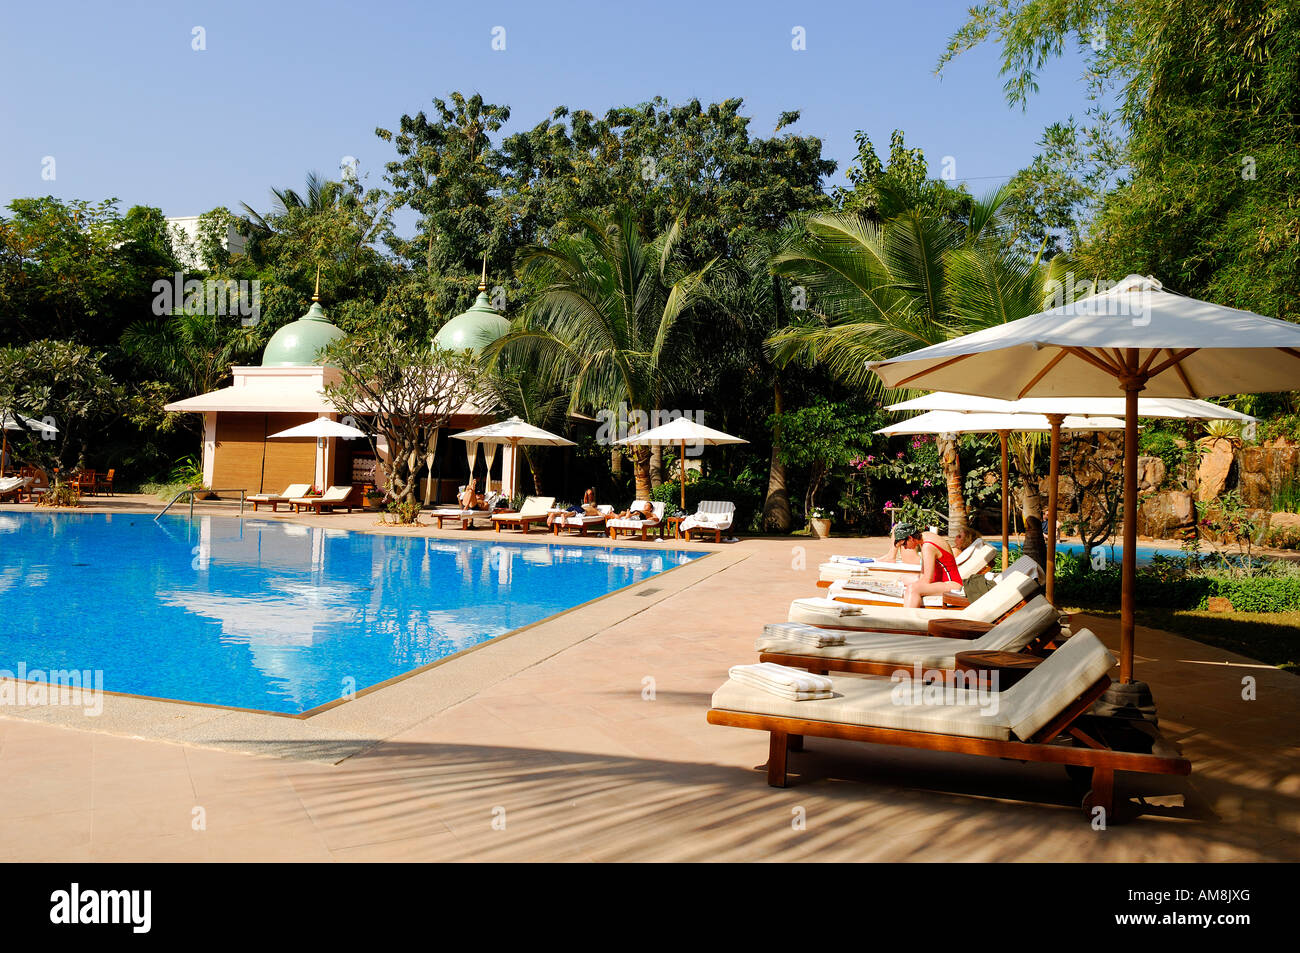 India, Karnataka state, Bangalore, Leela Palace, luxury hotel Stock Photo